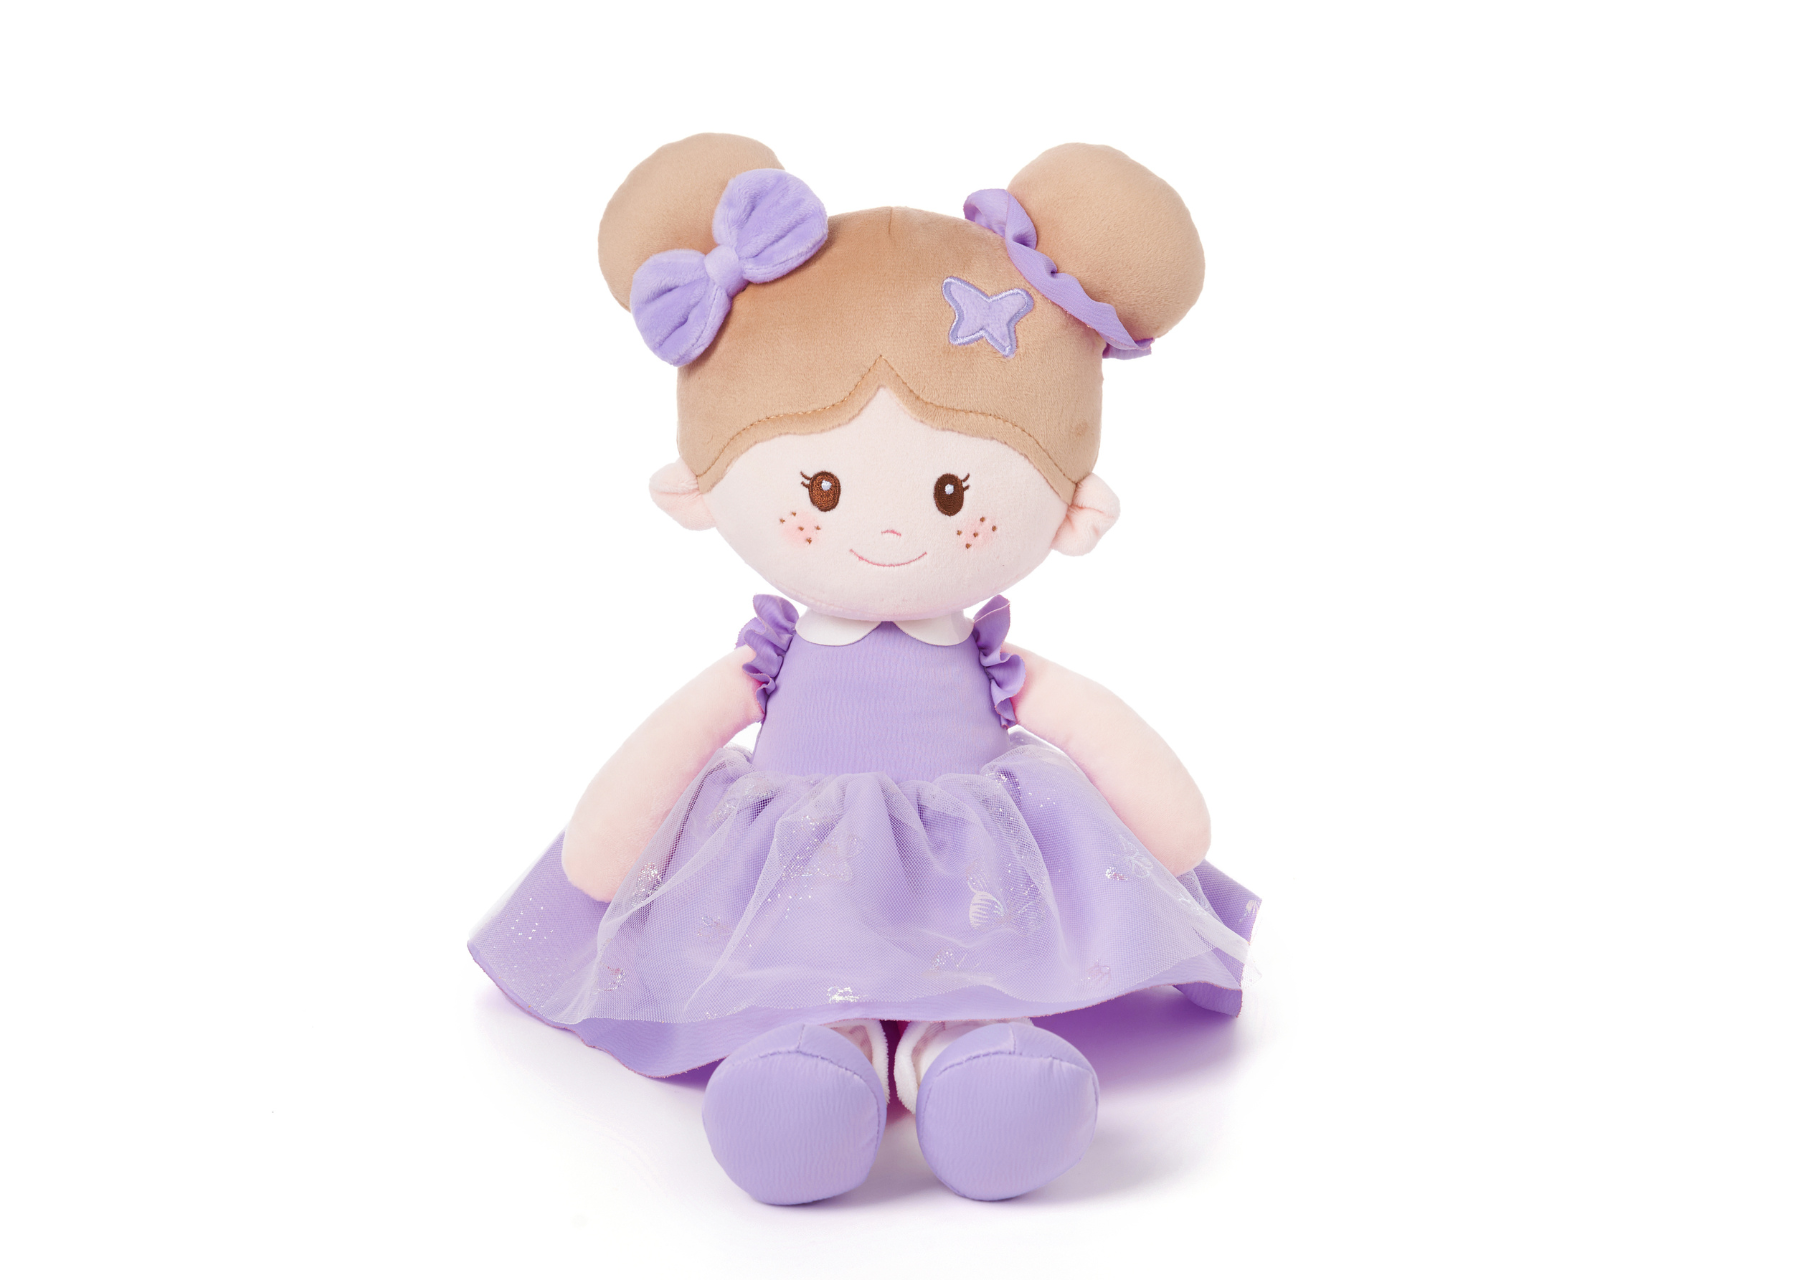 Leyadoll Soft Plush Personalized Leya Doll, My First Baby Doll